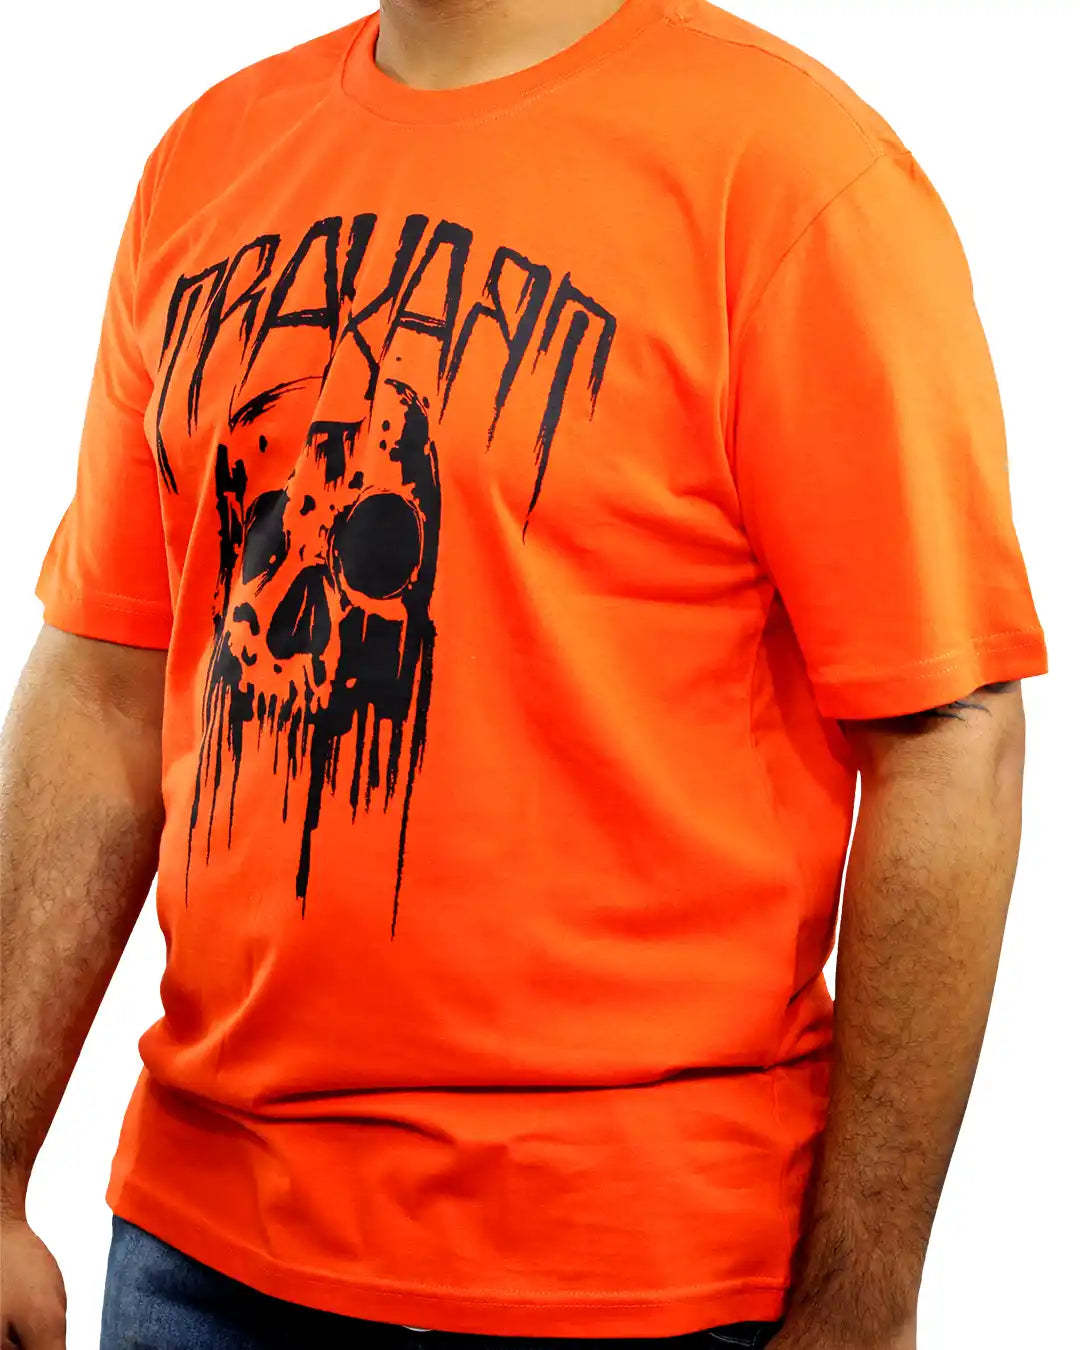 Camiseta Traxart Skull Laranja DZ-392